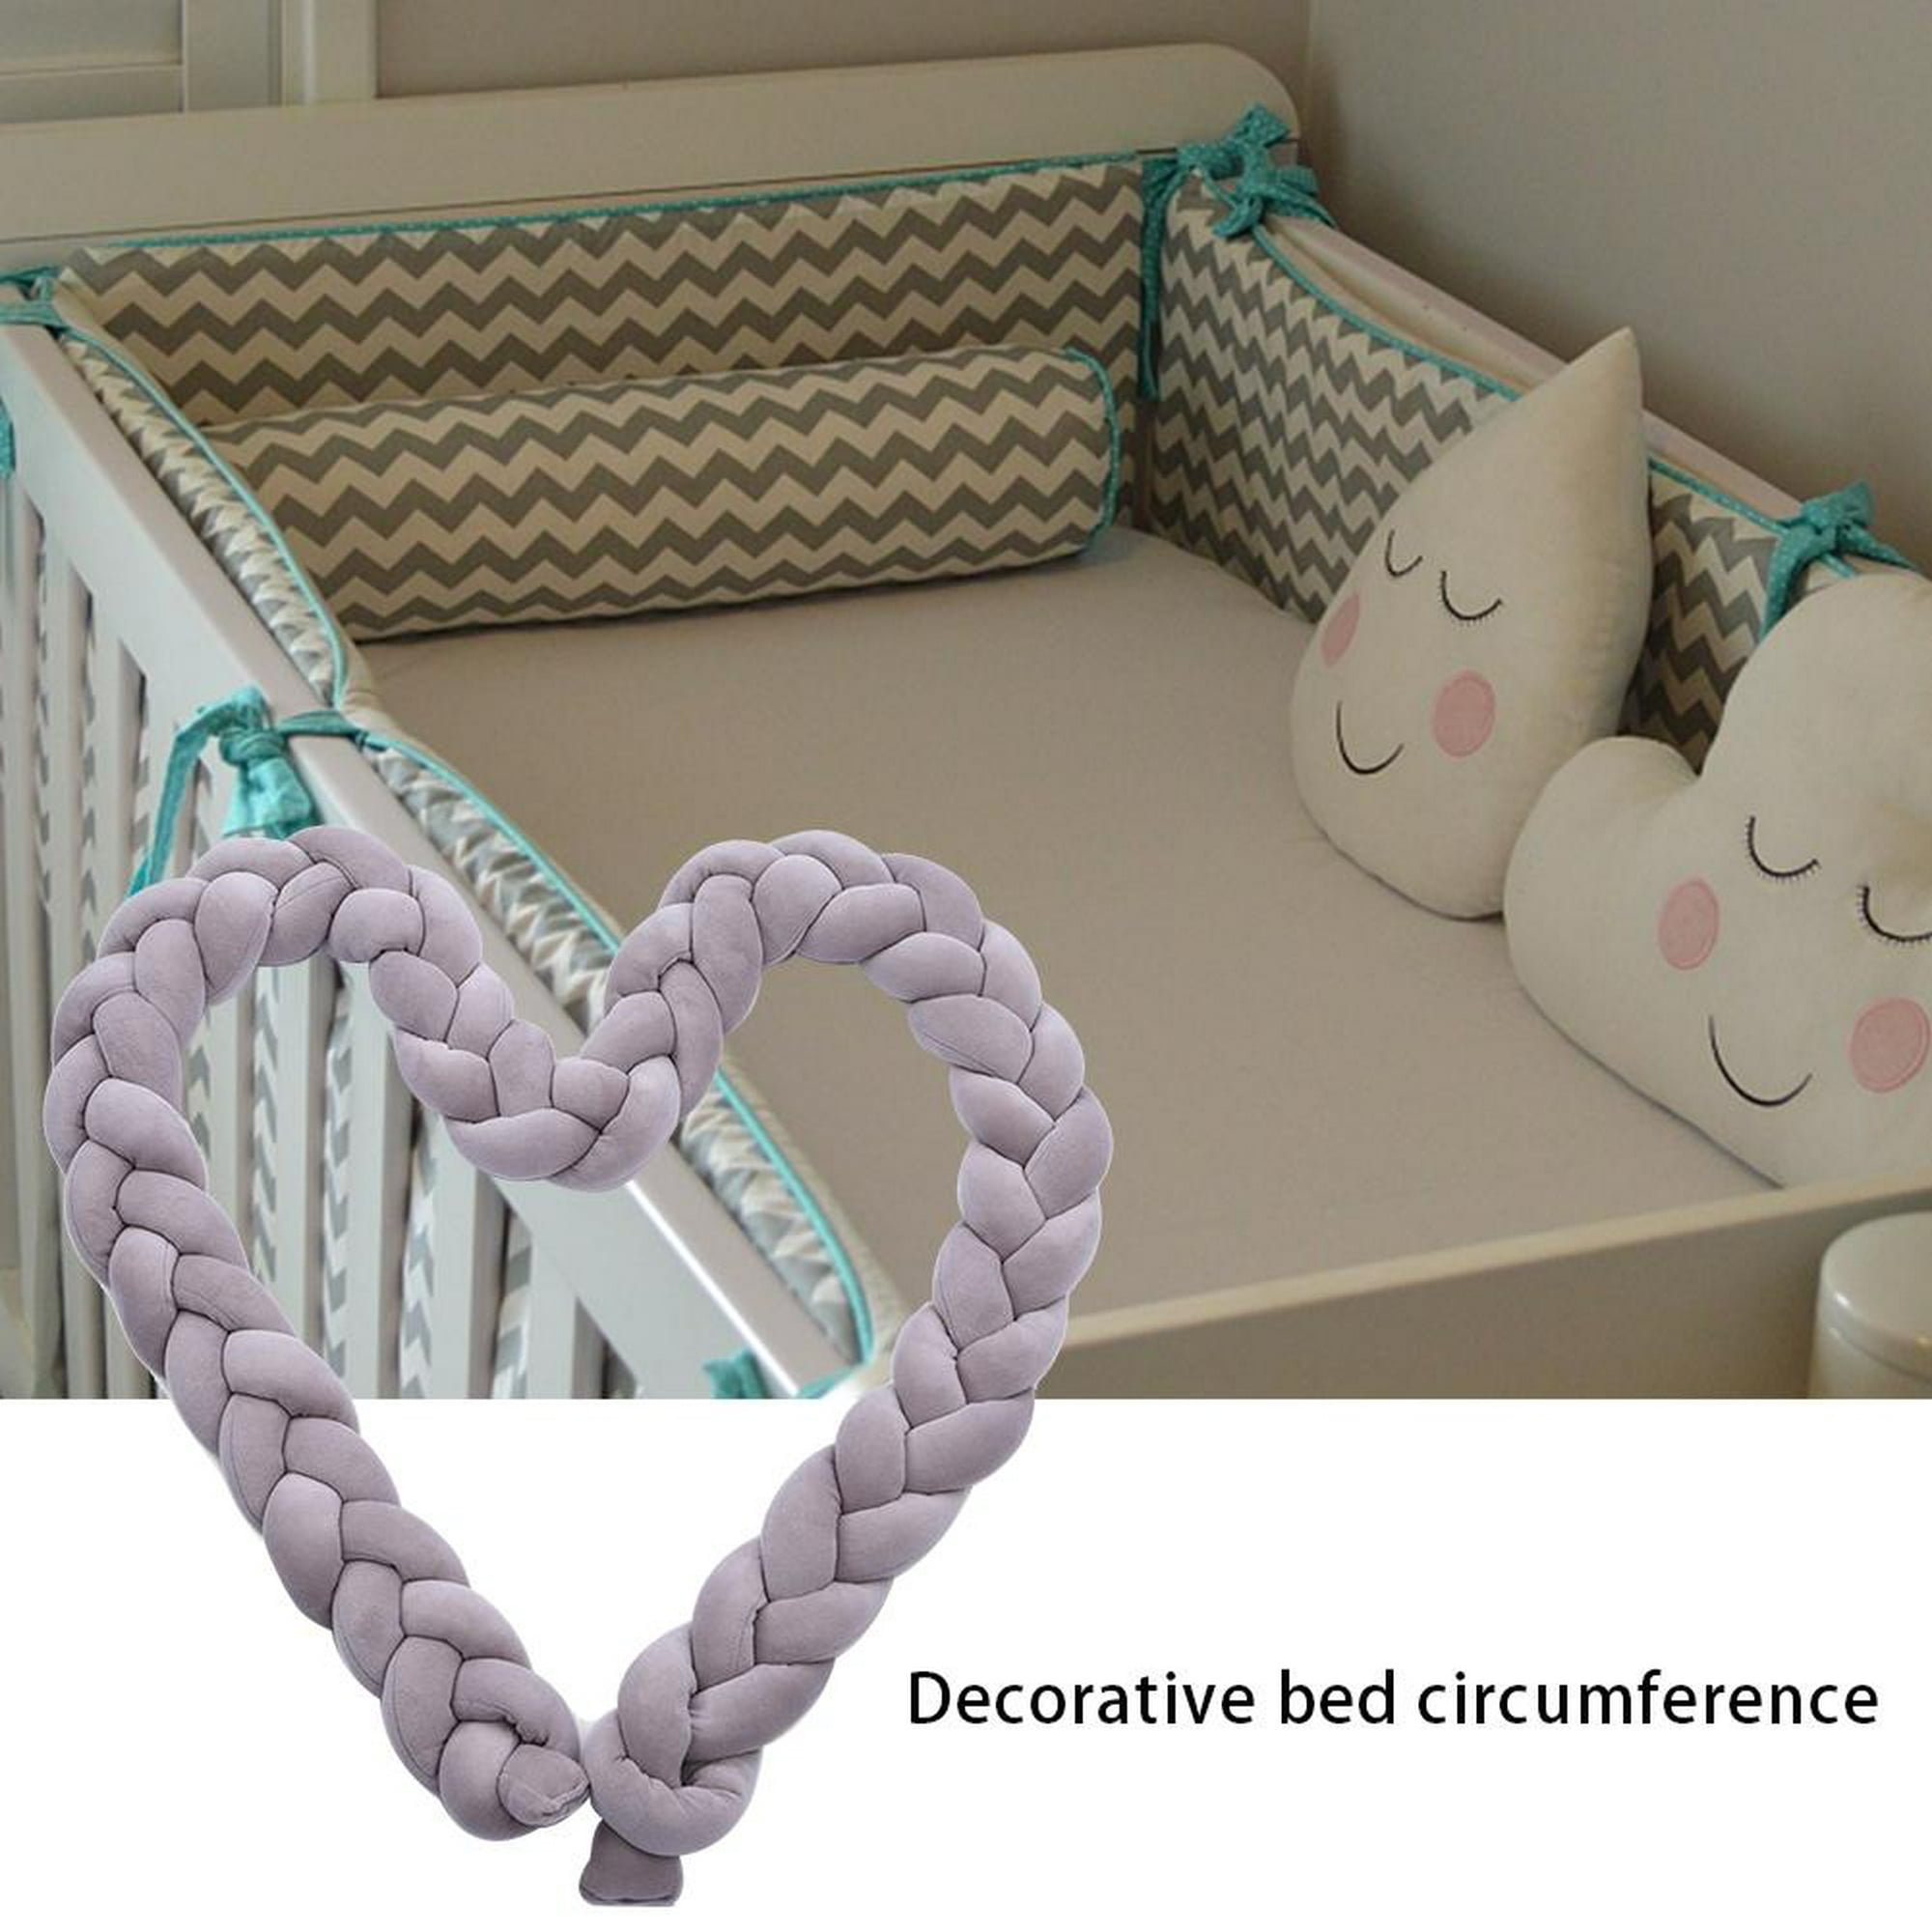 Parachoques para cama De bebé, cojín con nudo trenzado, Protector De cuna,  decoración De habitación, juego De cama